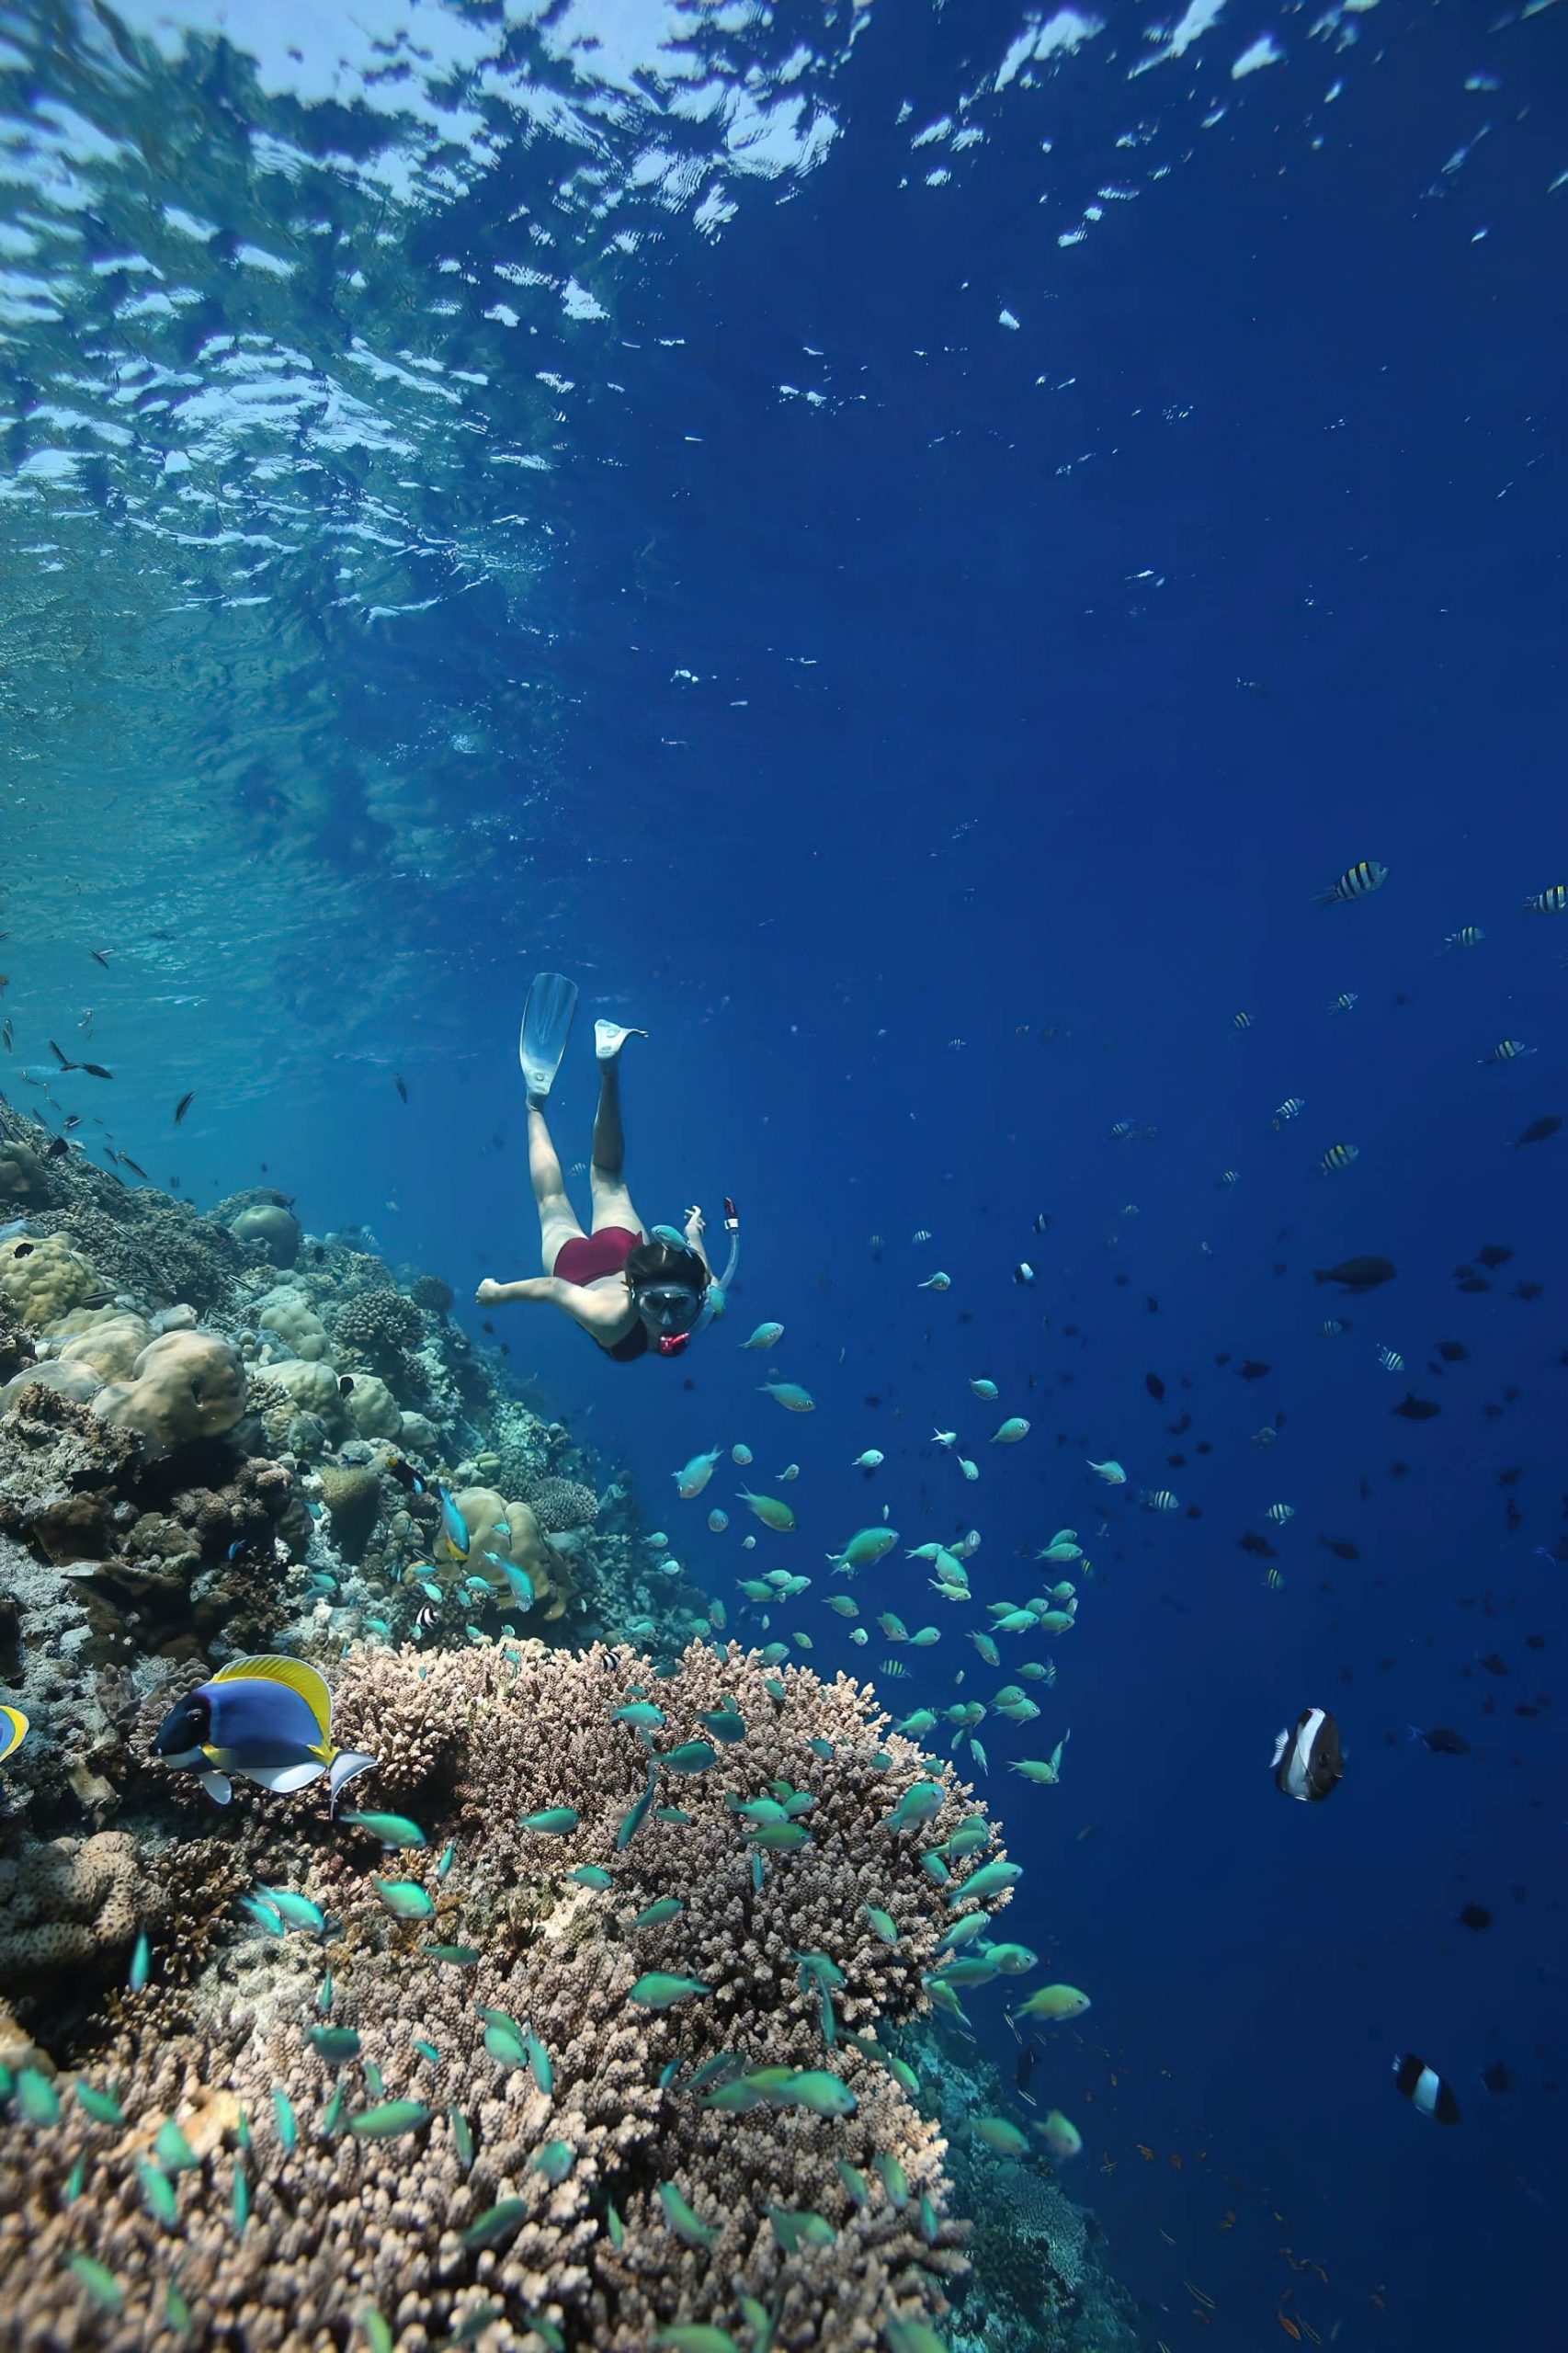 Anantara Kihavah Maldives Villas Resort – Baa Atoll, Maldives – House Reef Snorkeling